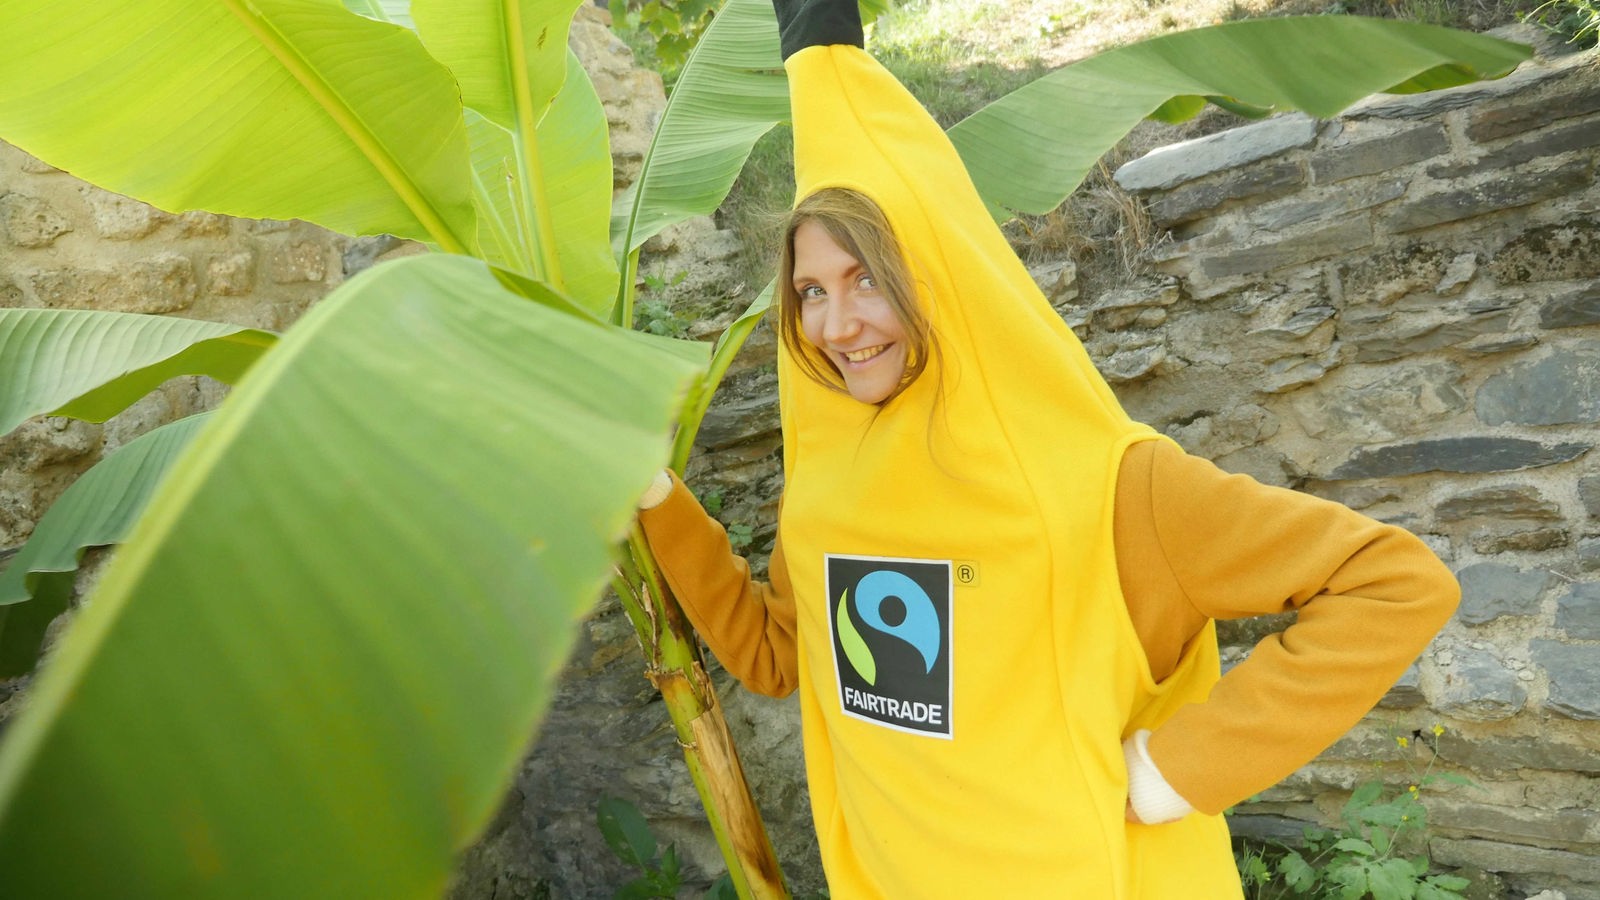 Jana im Bananenkostüm mit Fairtrade-Aufkleber vor einer Bananenstaude